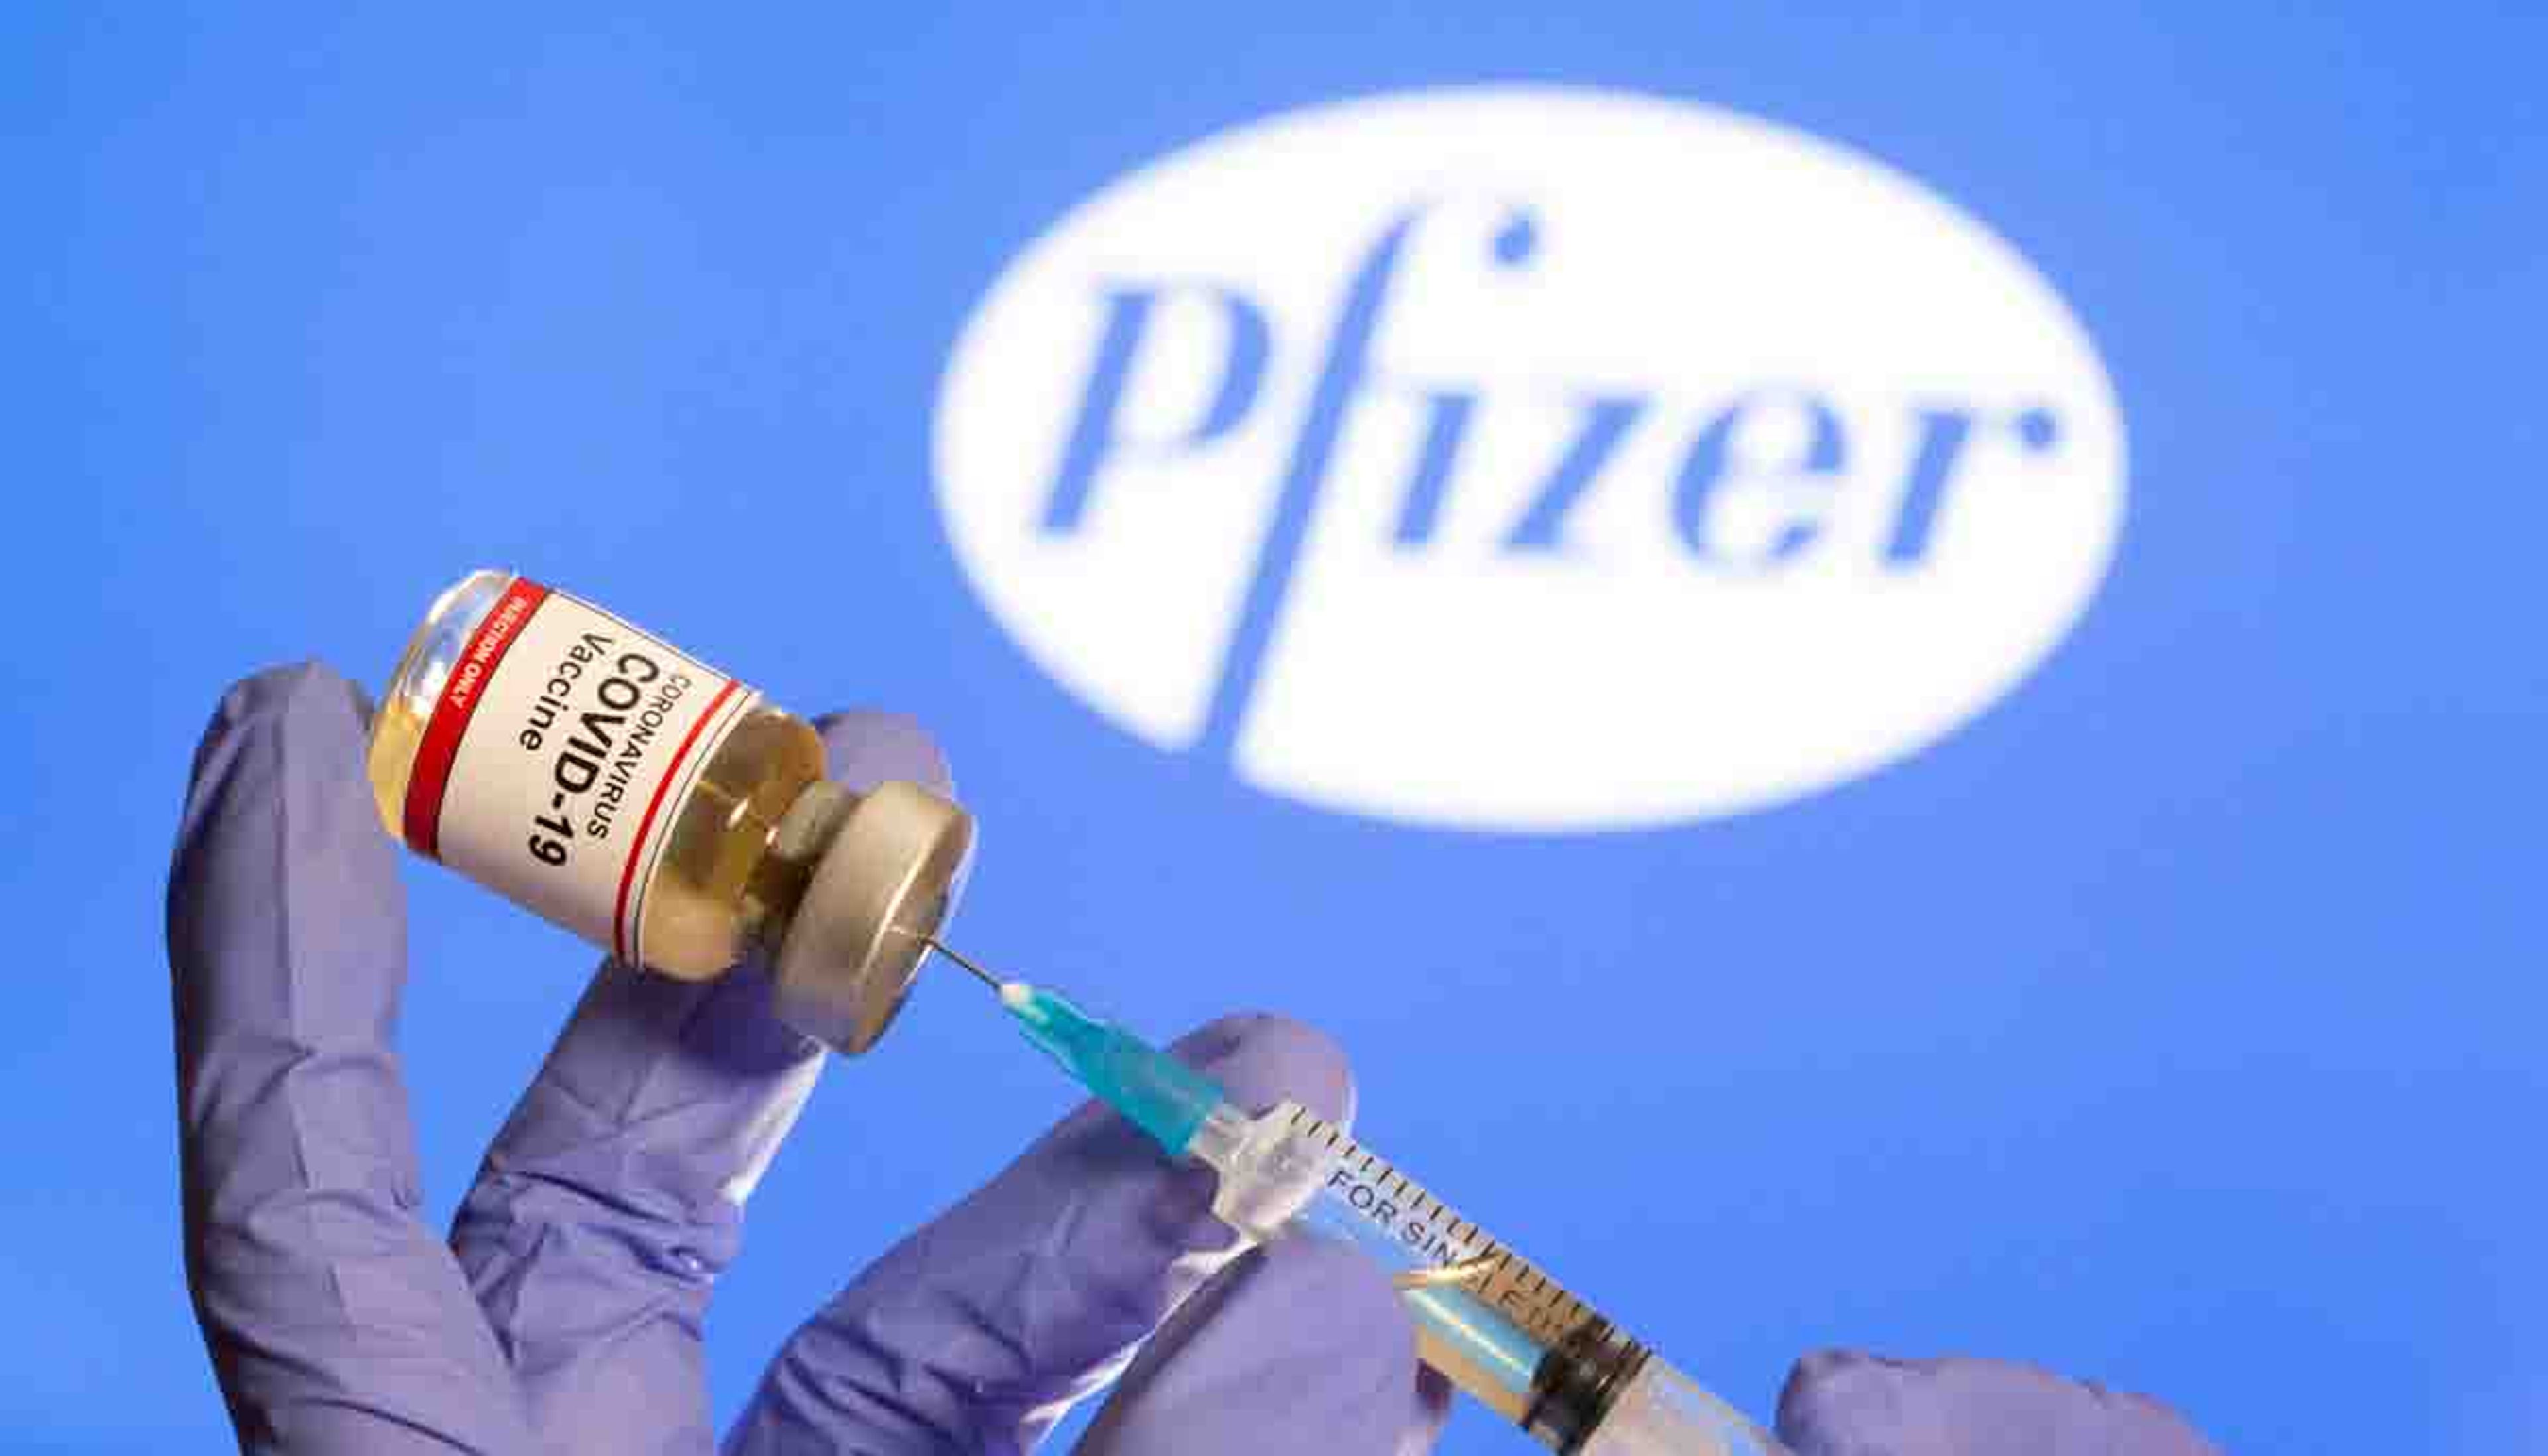 ¿La vacuna de Pfizer produce insomnio? Reacciones adversas que puede provocar